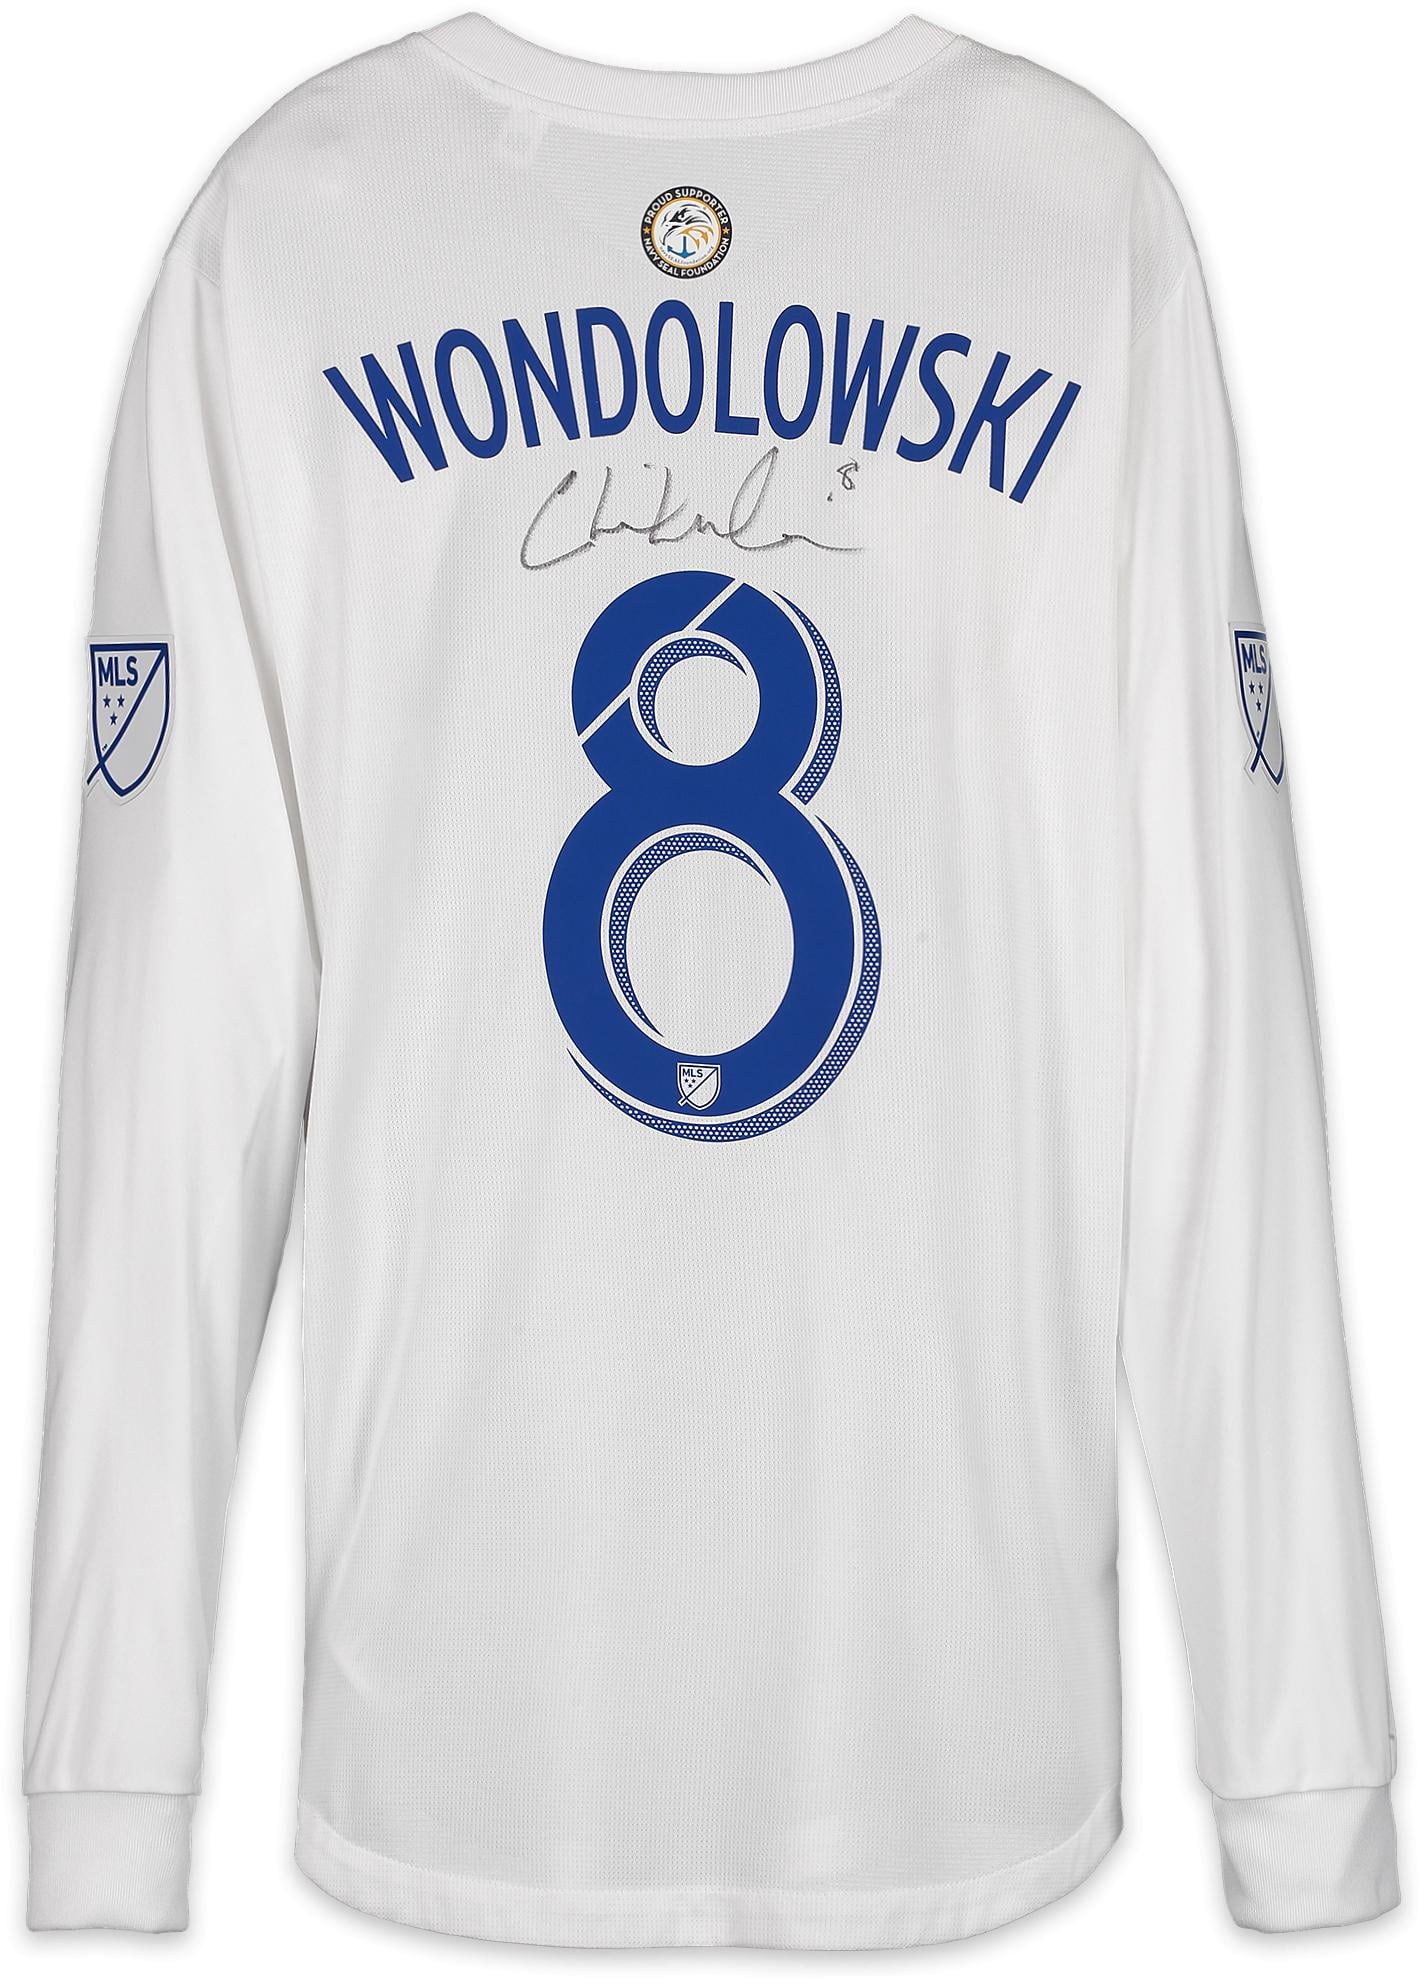 wondolowski jersey